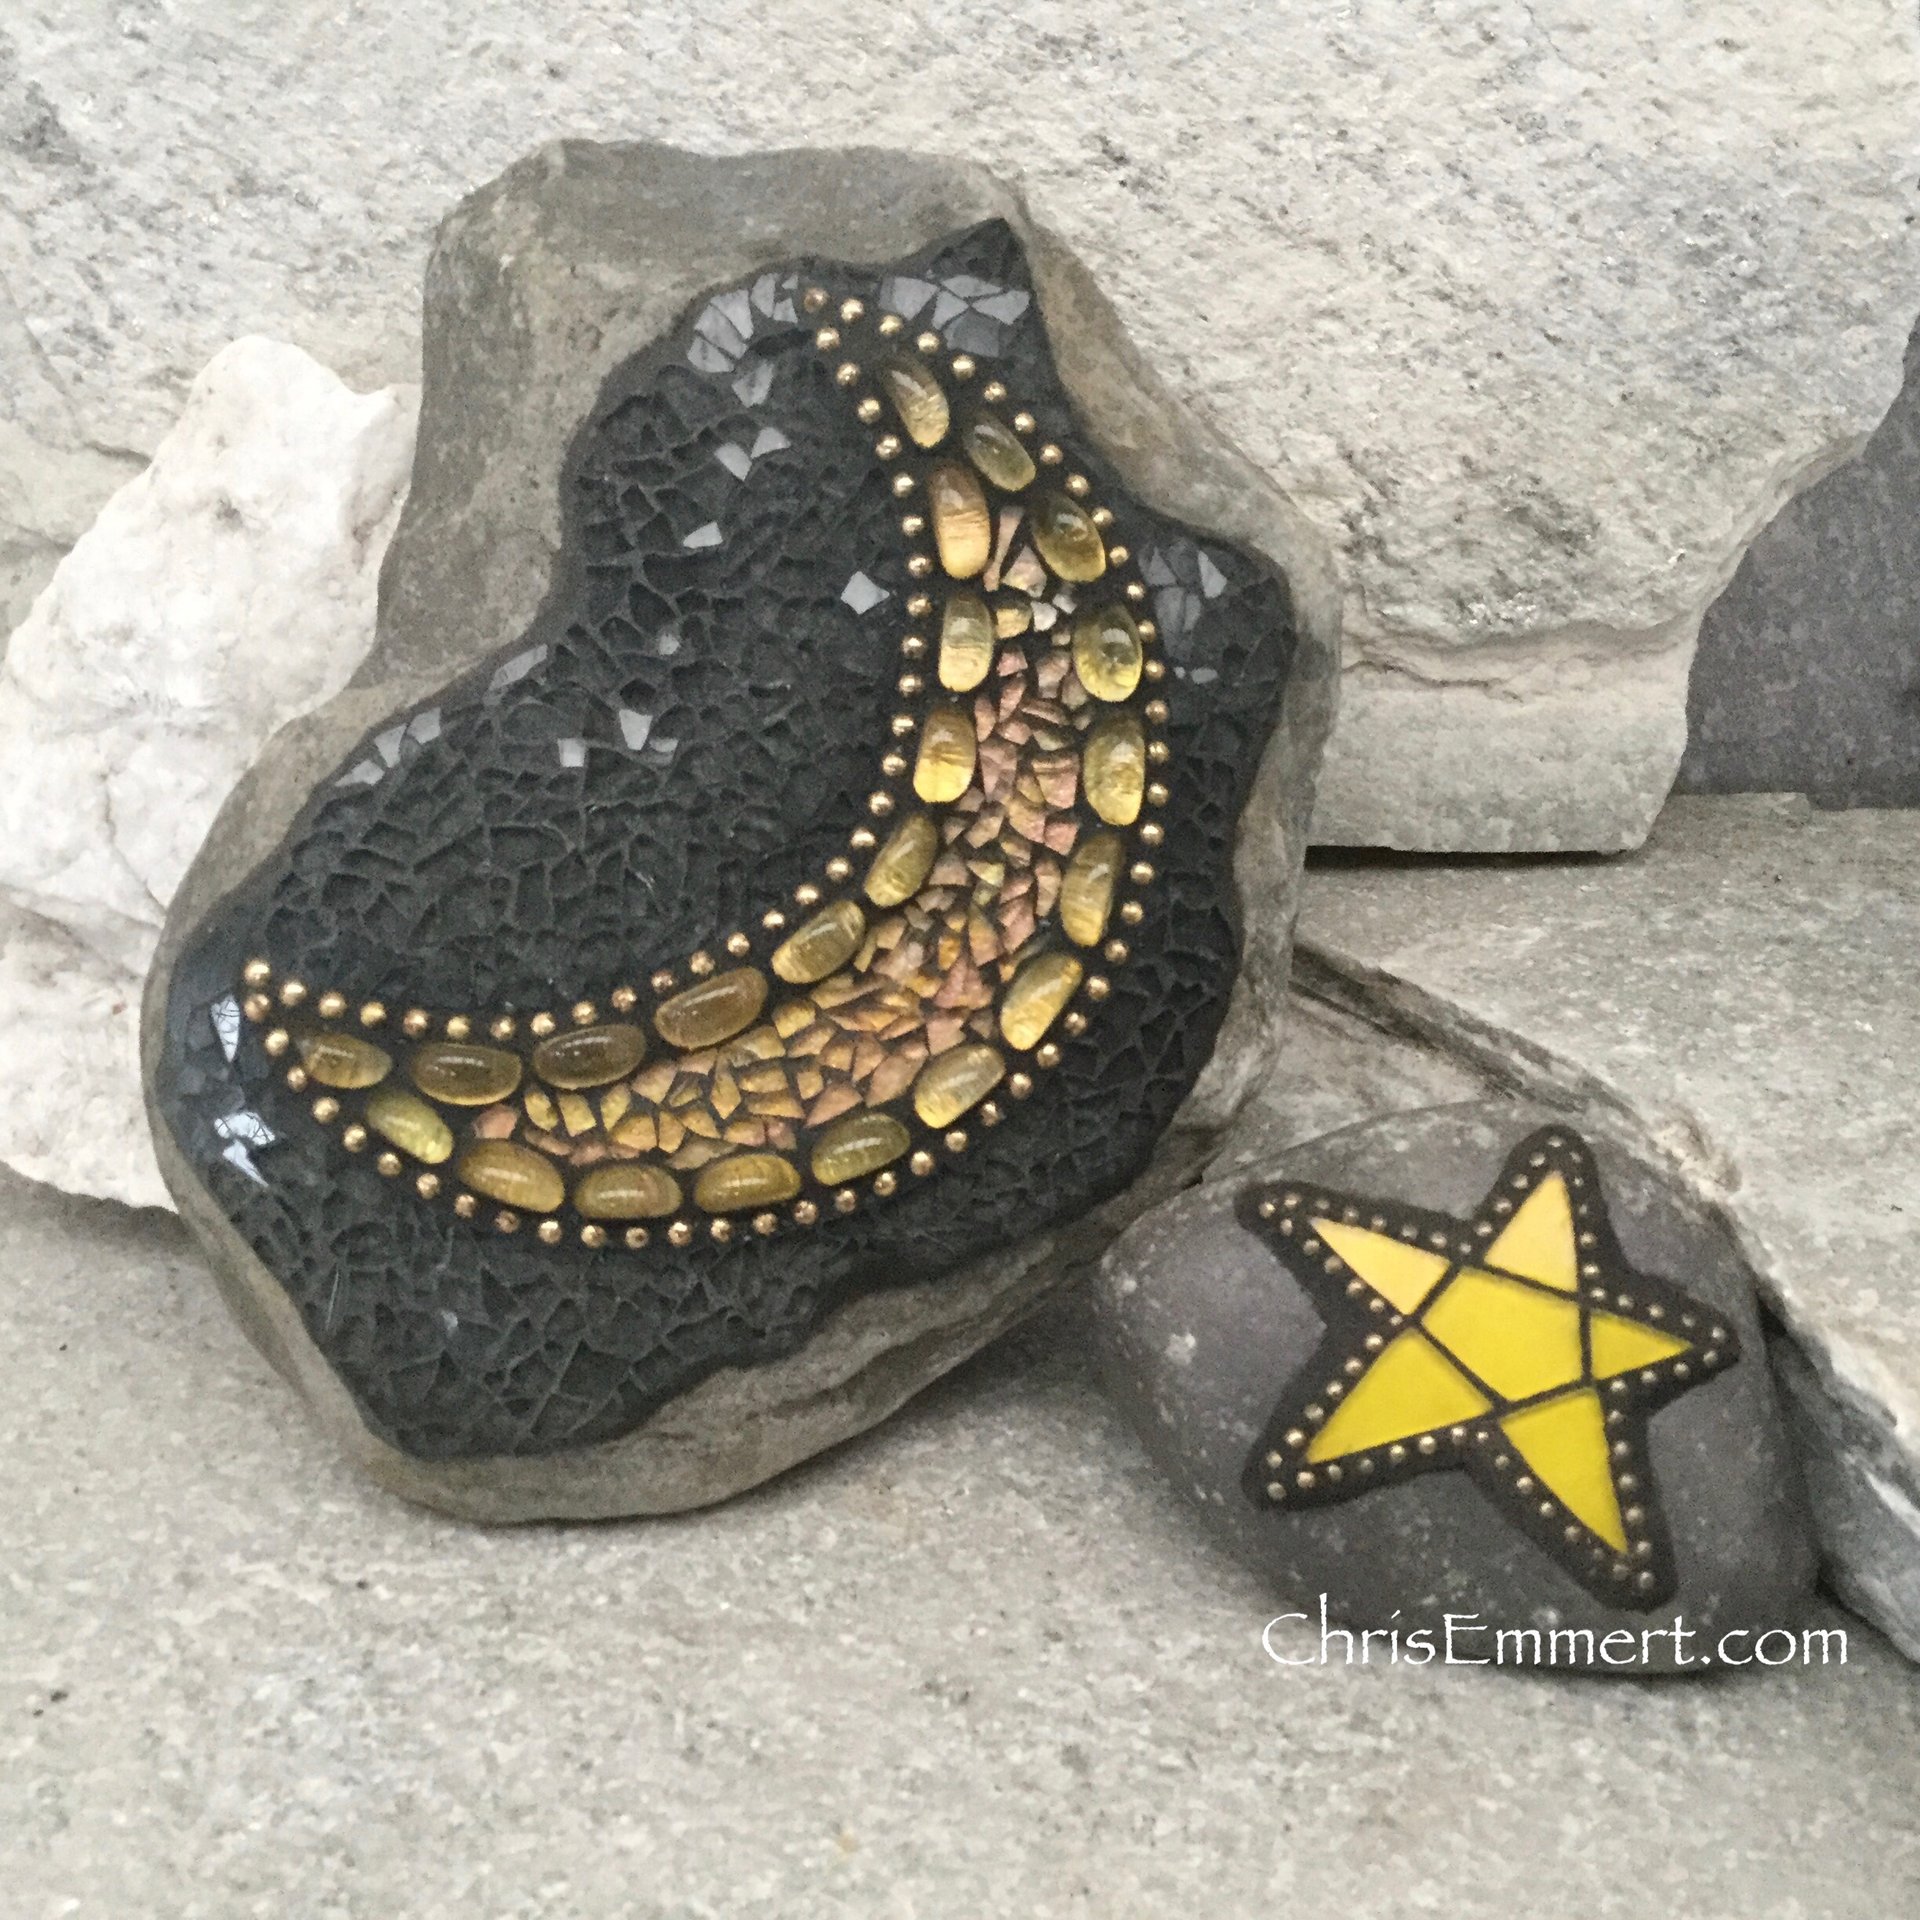 Moon and Star Mosaic / Porch Decor, Garden stone